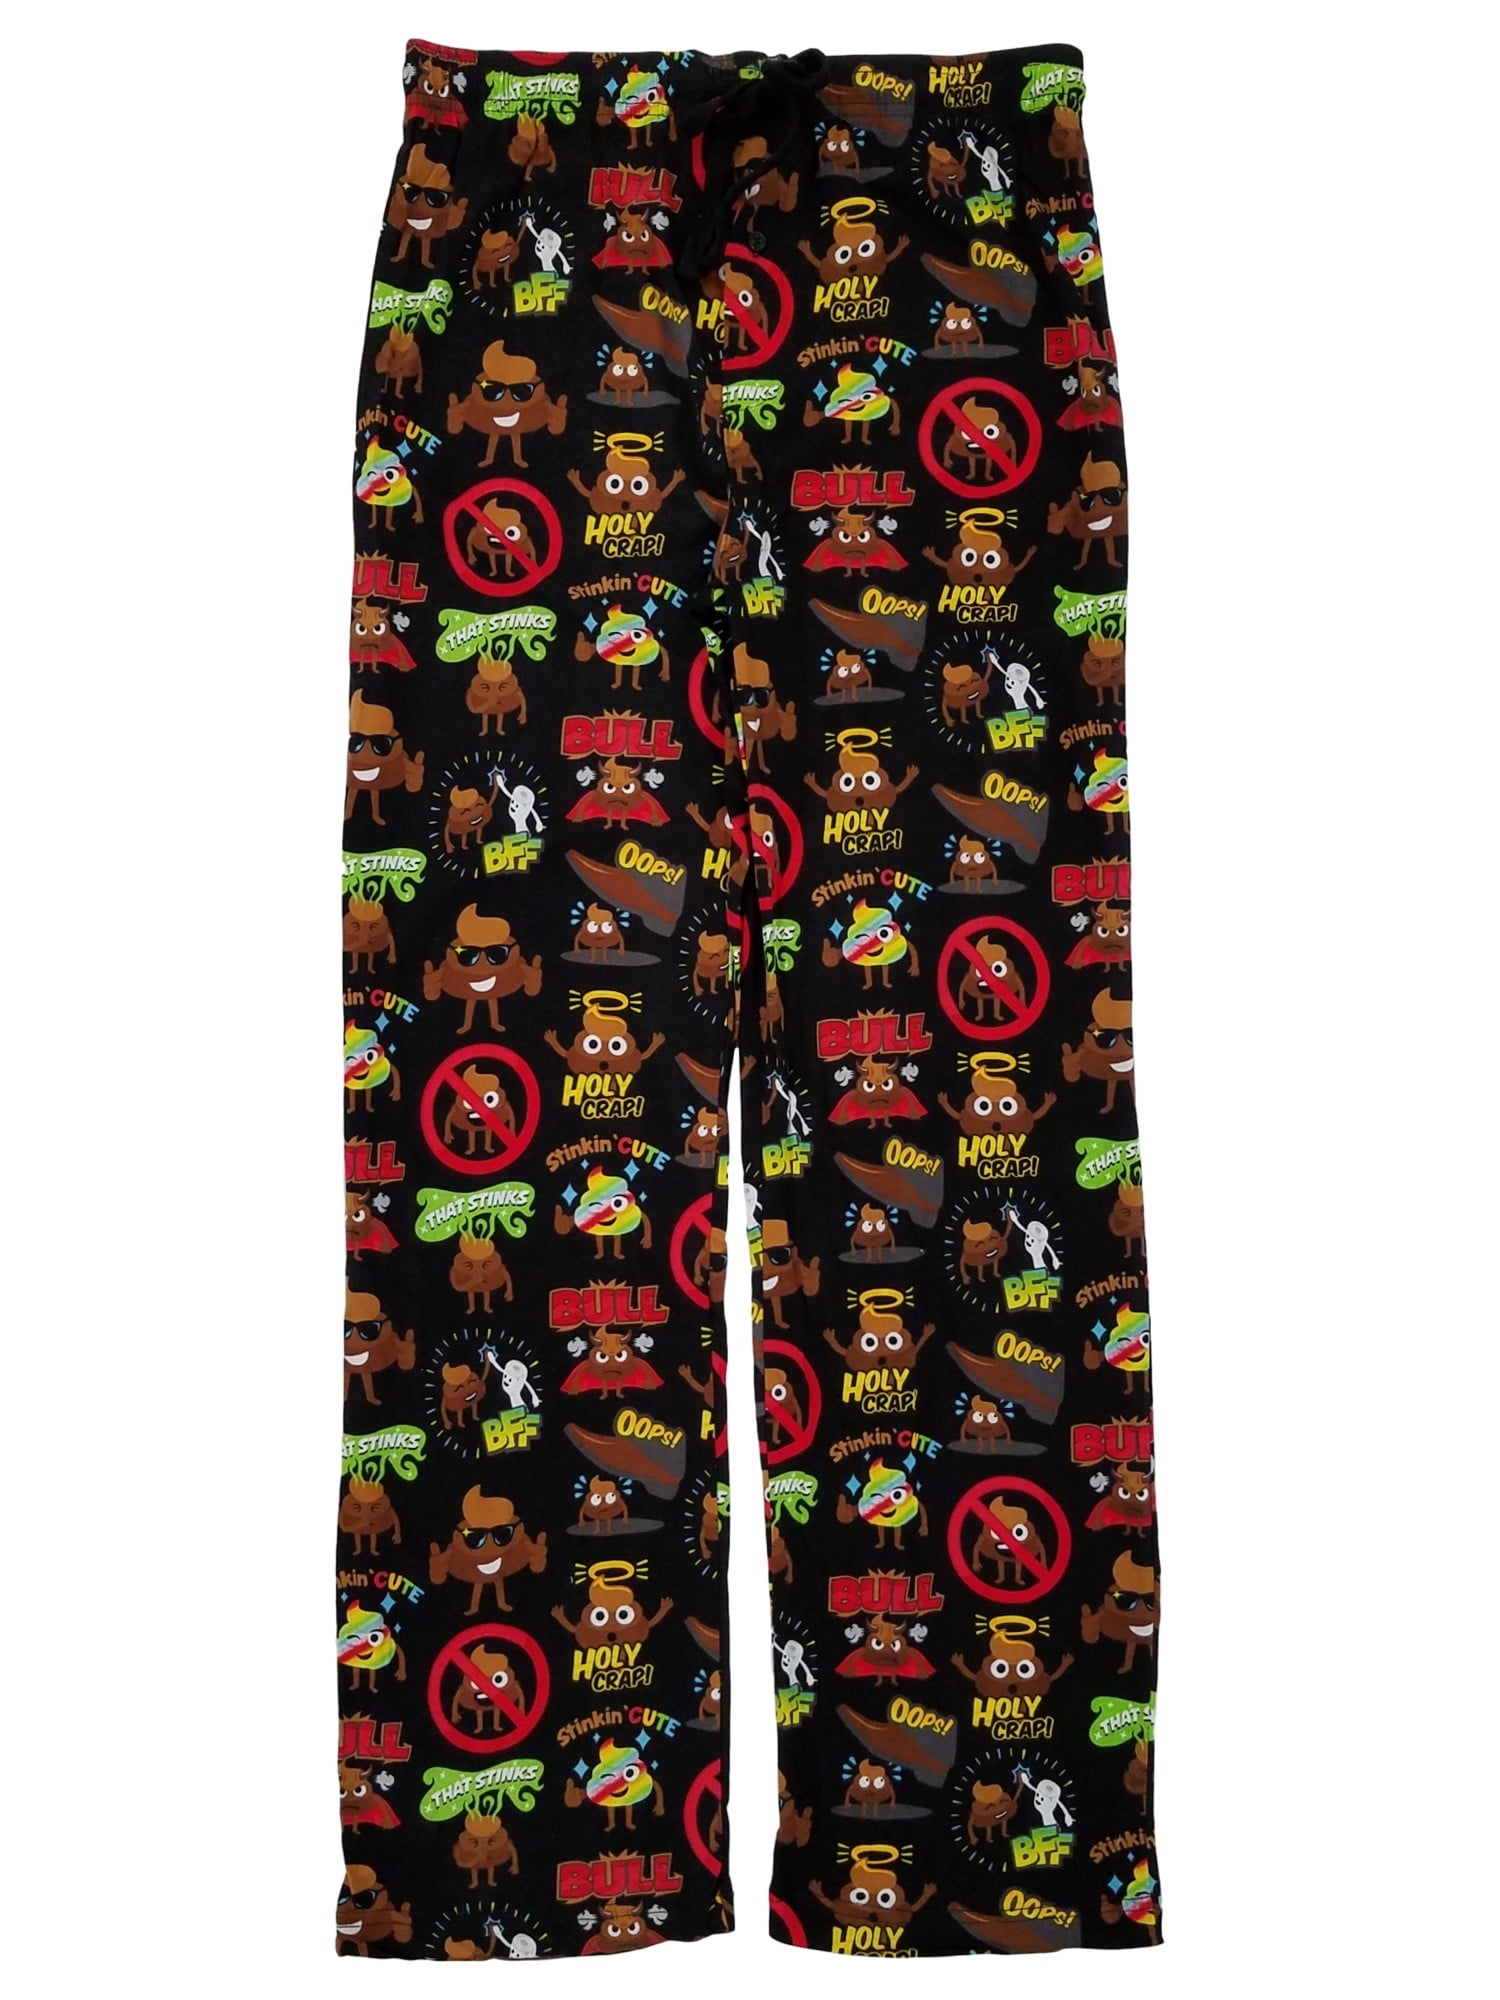 Emojione Mens Black Poop Emoji Knit Sleep Pants Lounge Pant Pajama ...